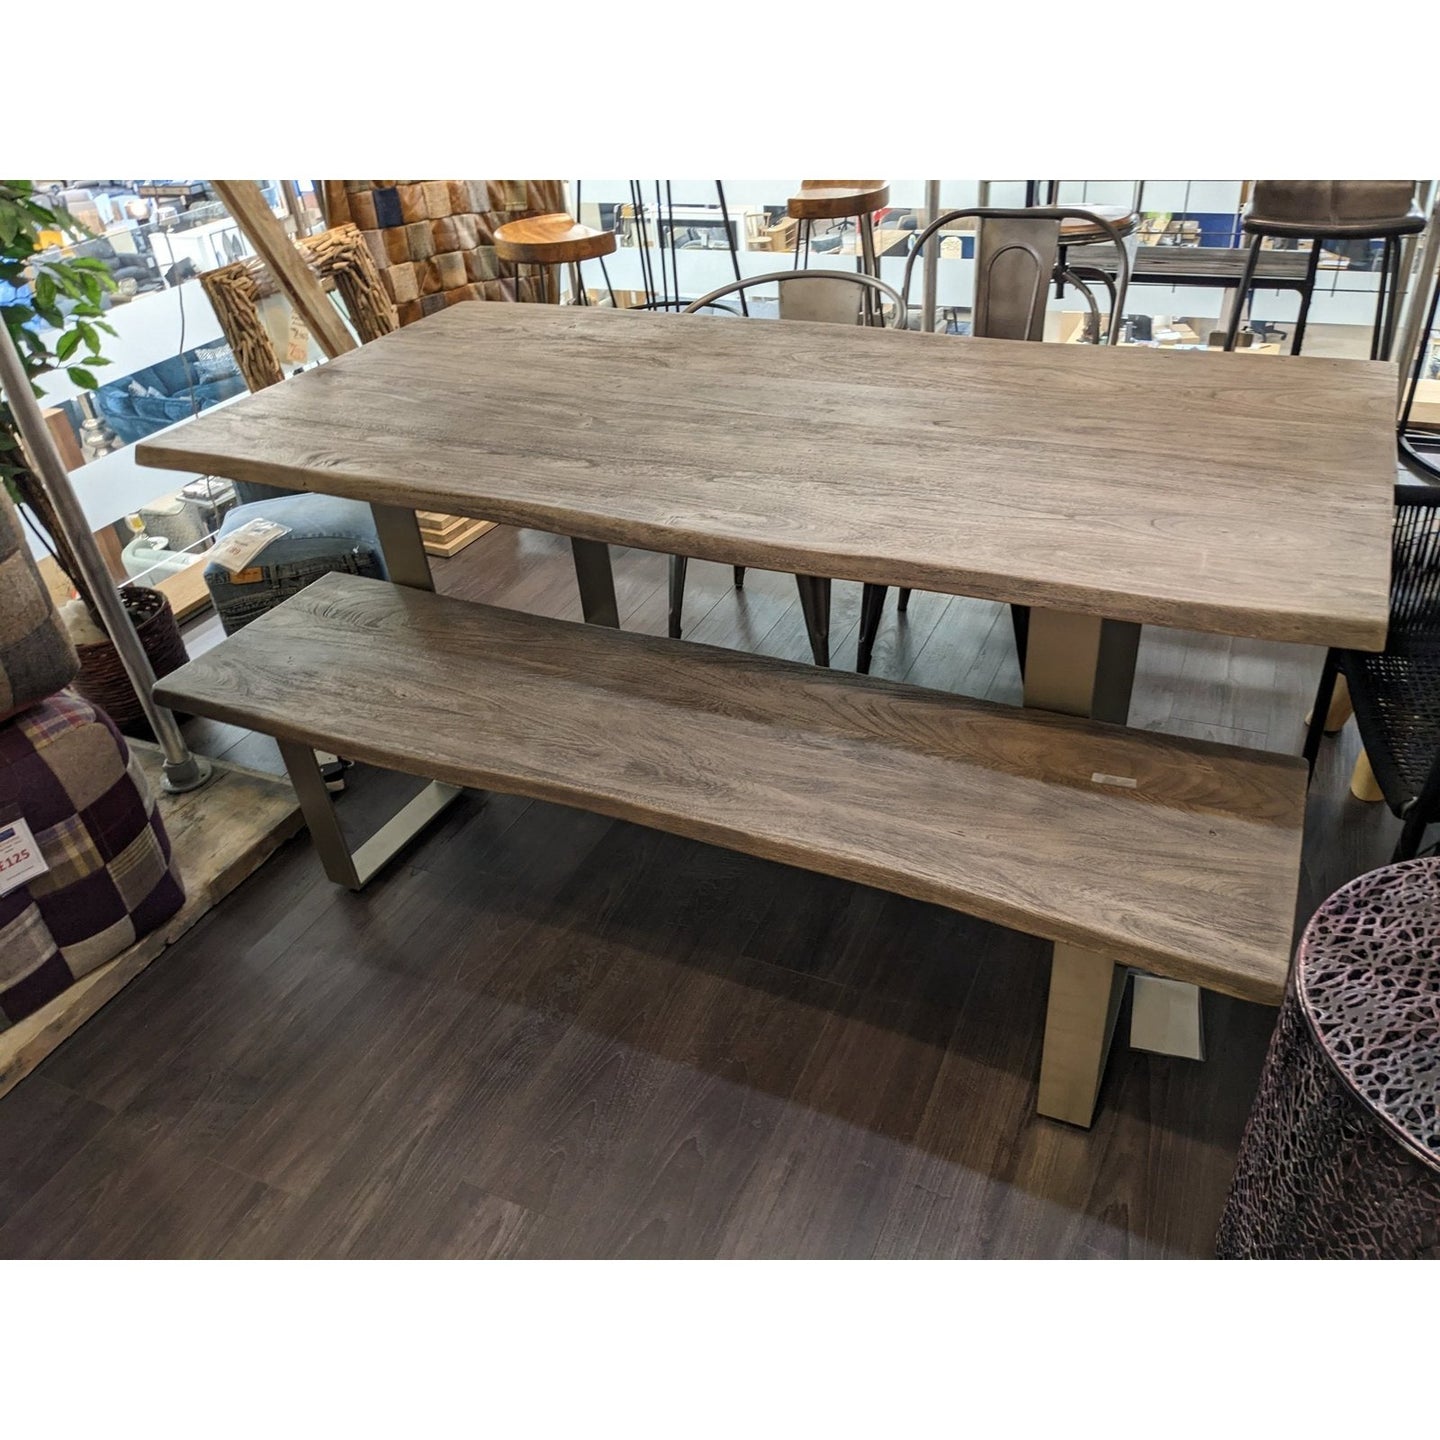 Huntington Grey Table (200 x 100) and Bench